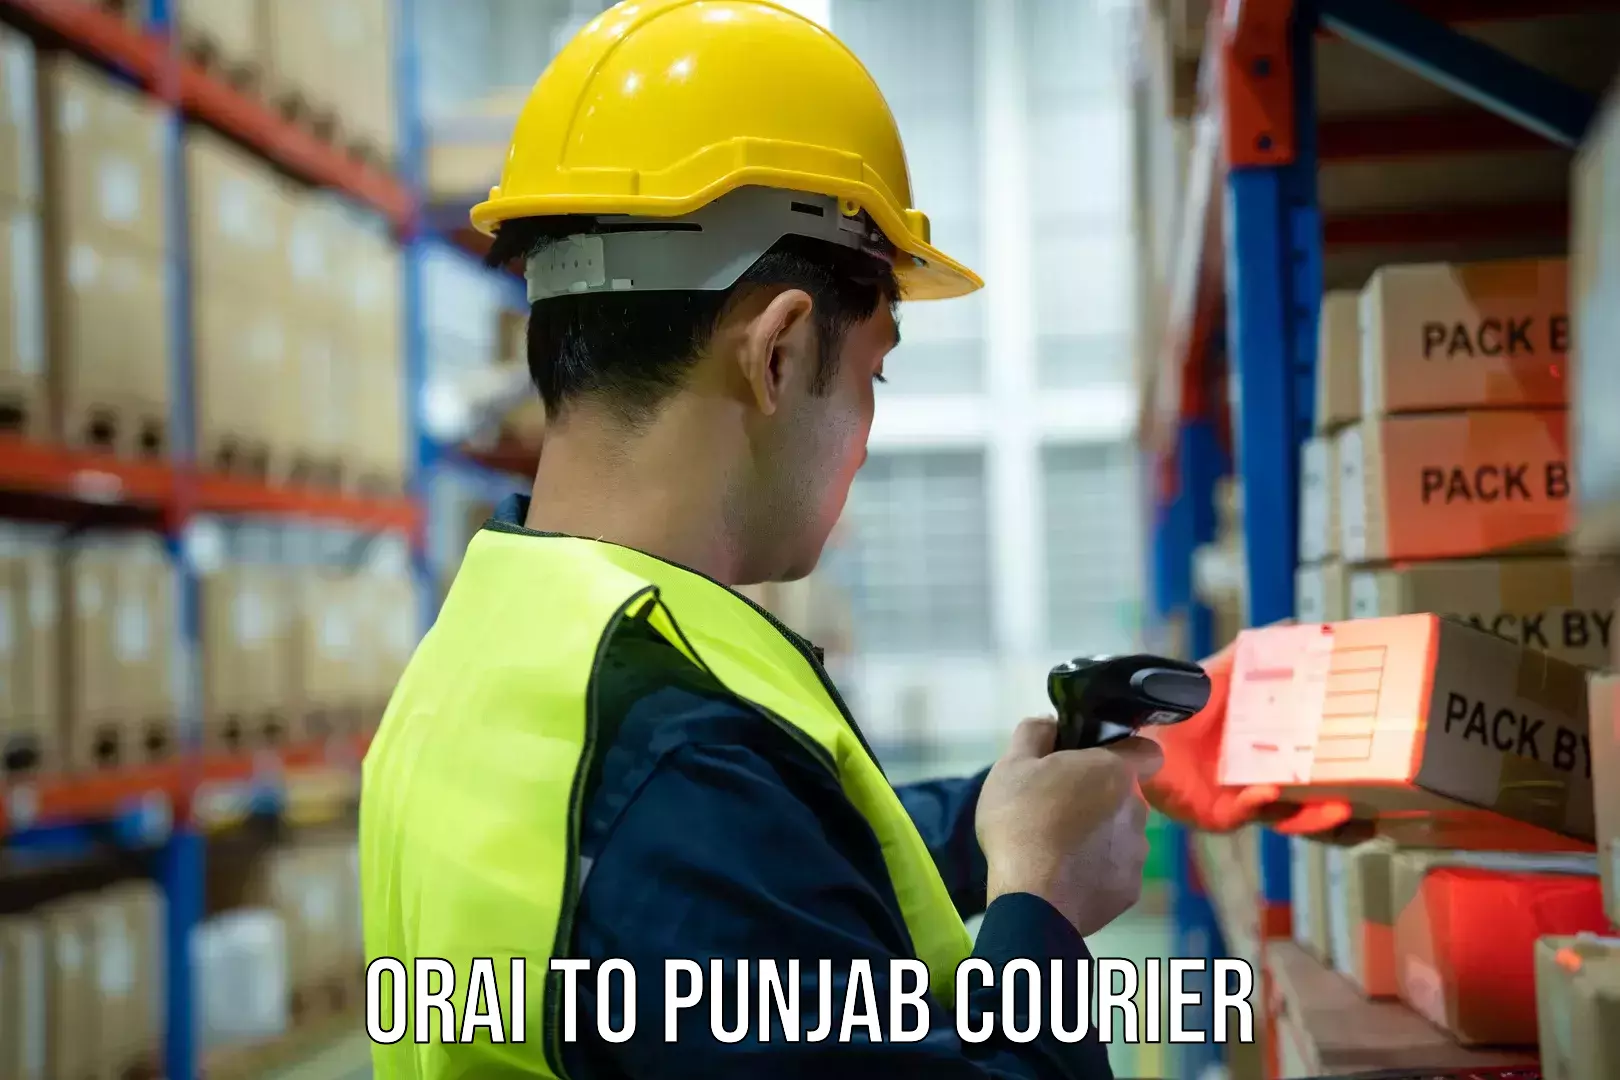 Expedited shipping methods Orai to Punjab